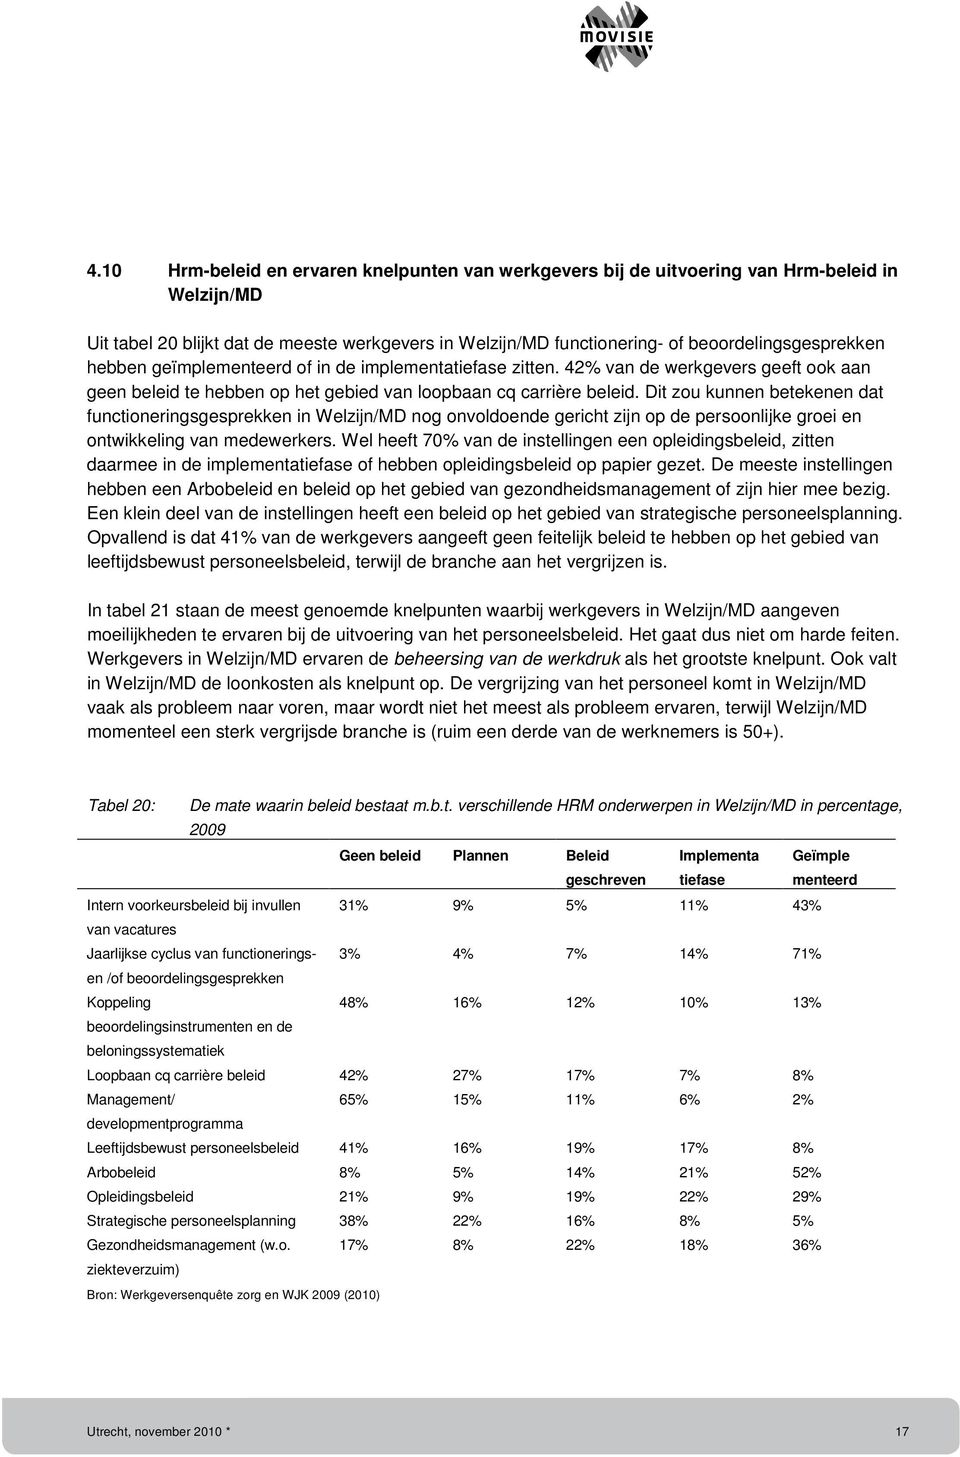 Dit zou kunnen betekenen dat functioneringsgesprekken in Welzijn/MD nog onvoldoende gericht zijn op de persoonlijke groei en ontwikkeling van medewerkers.